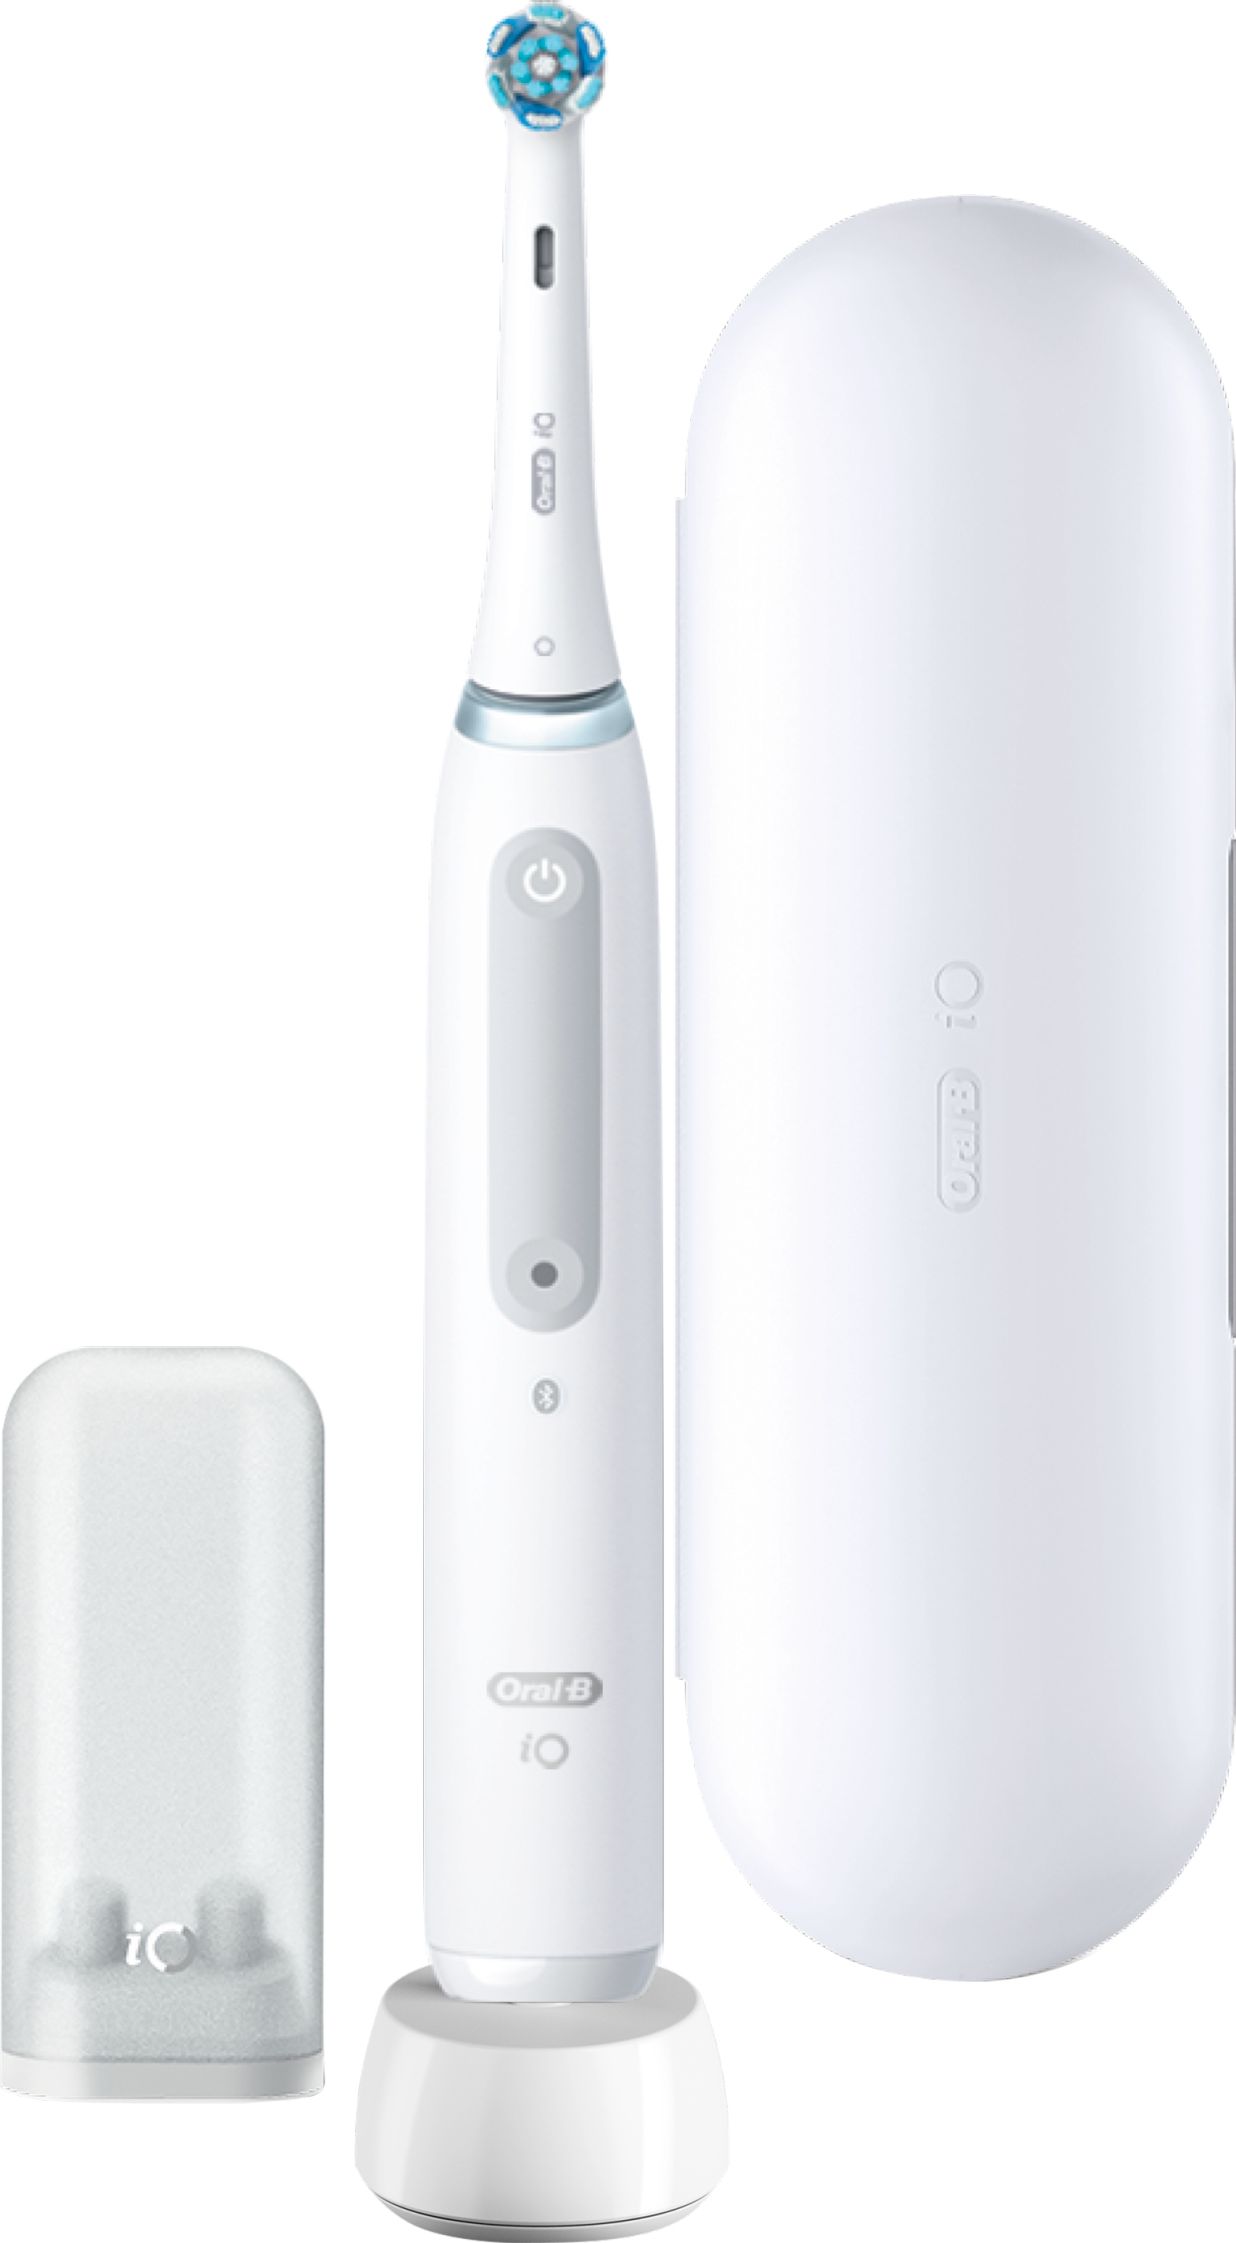 Oral B iO 4 Electric Toothbrush - White, White